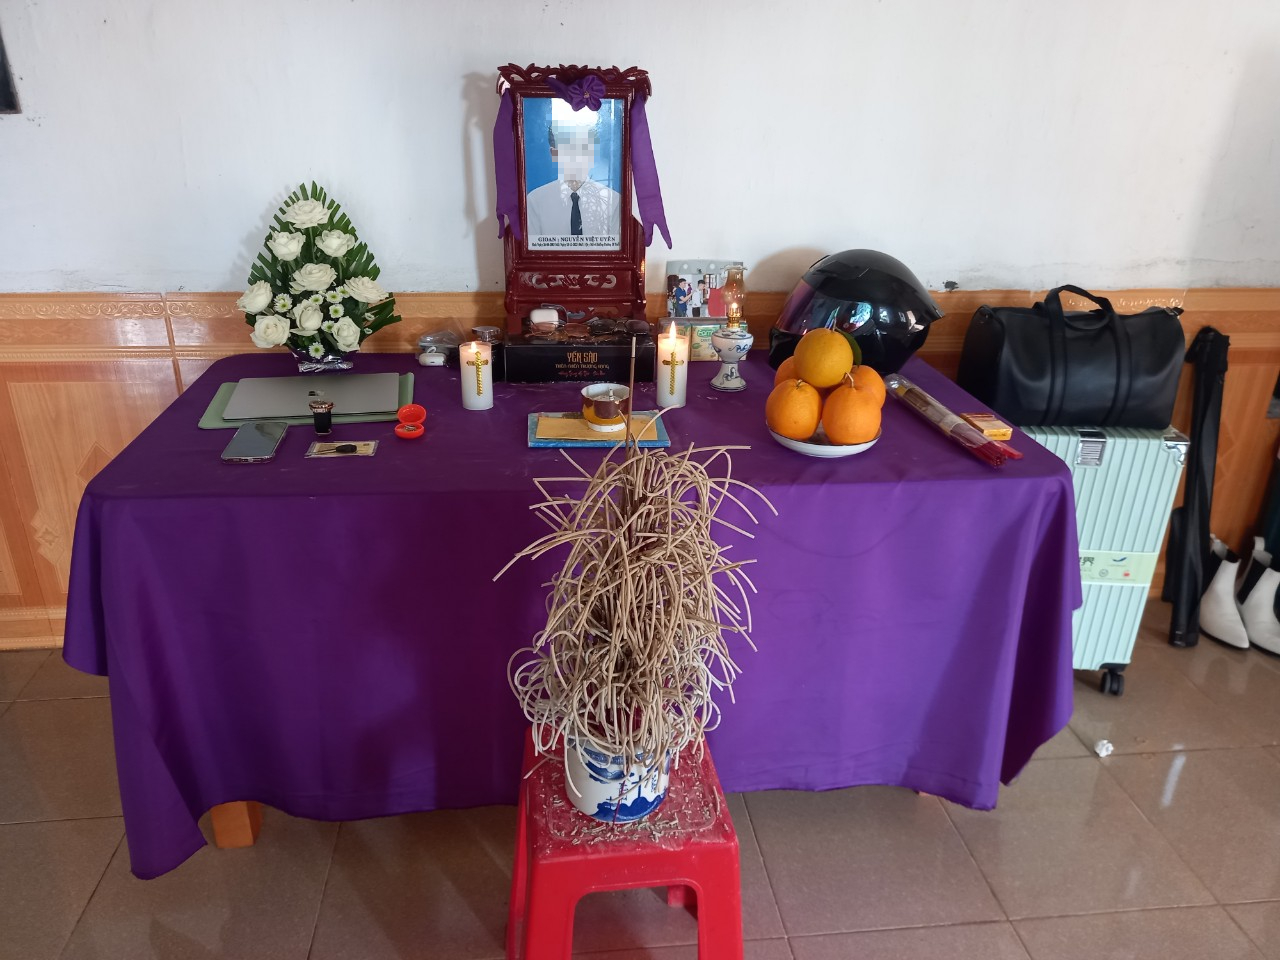 Tài sản cá nhân của nạn nhân được gia đình đặt trang trọng trên bàn thờ